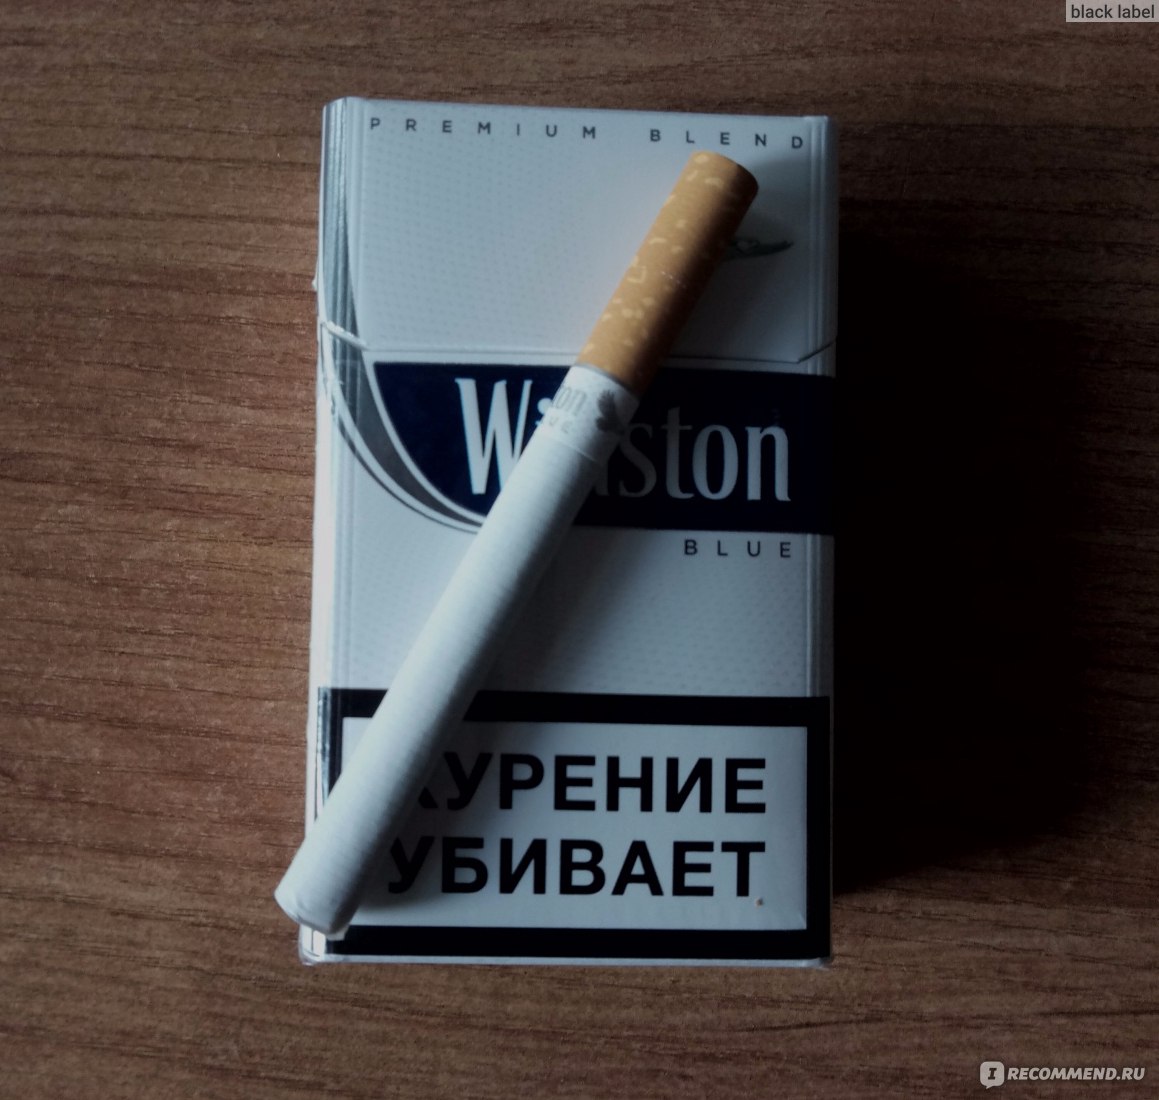 Сигареты Winston Classic Blue